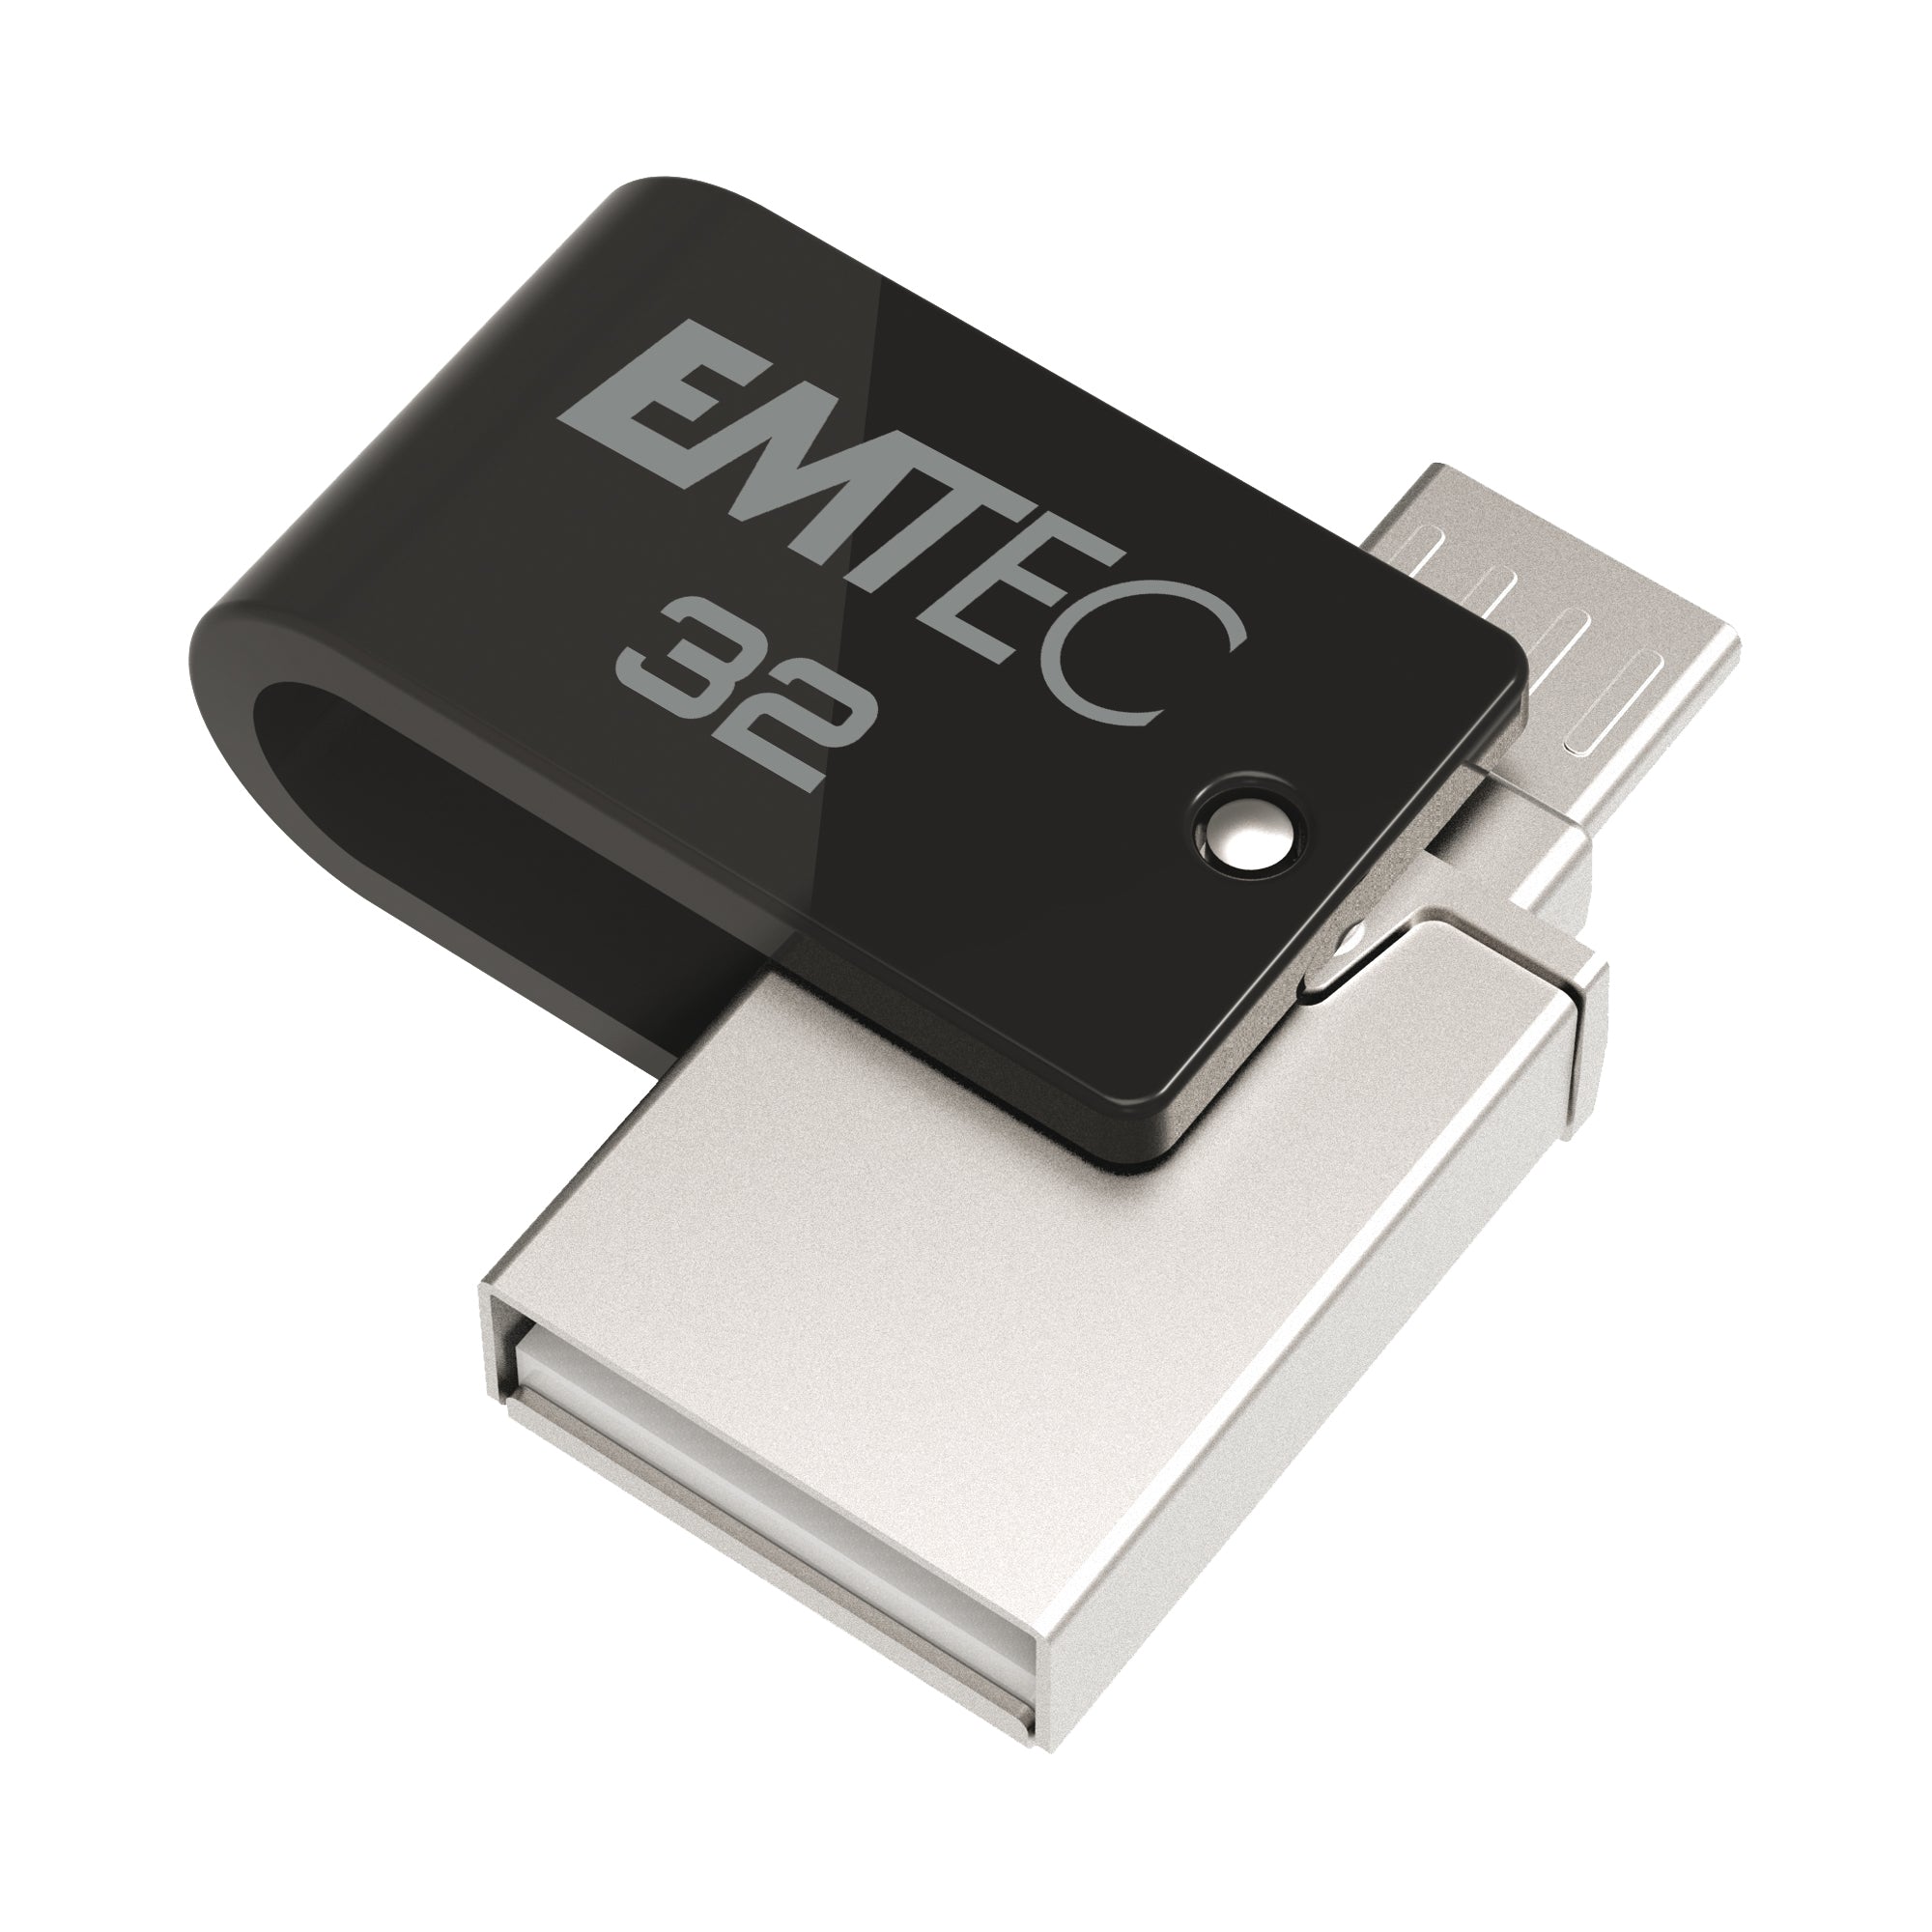 emtec-dual-usb3-2-to-type-c-t260-32gb